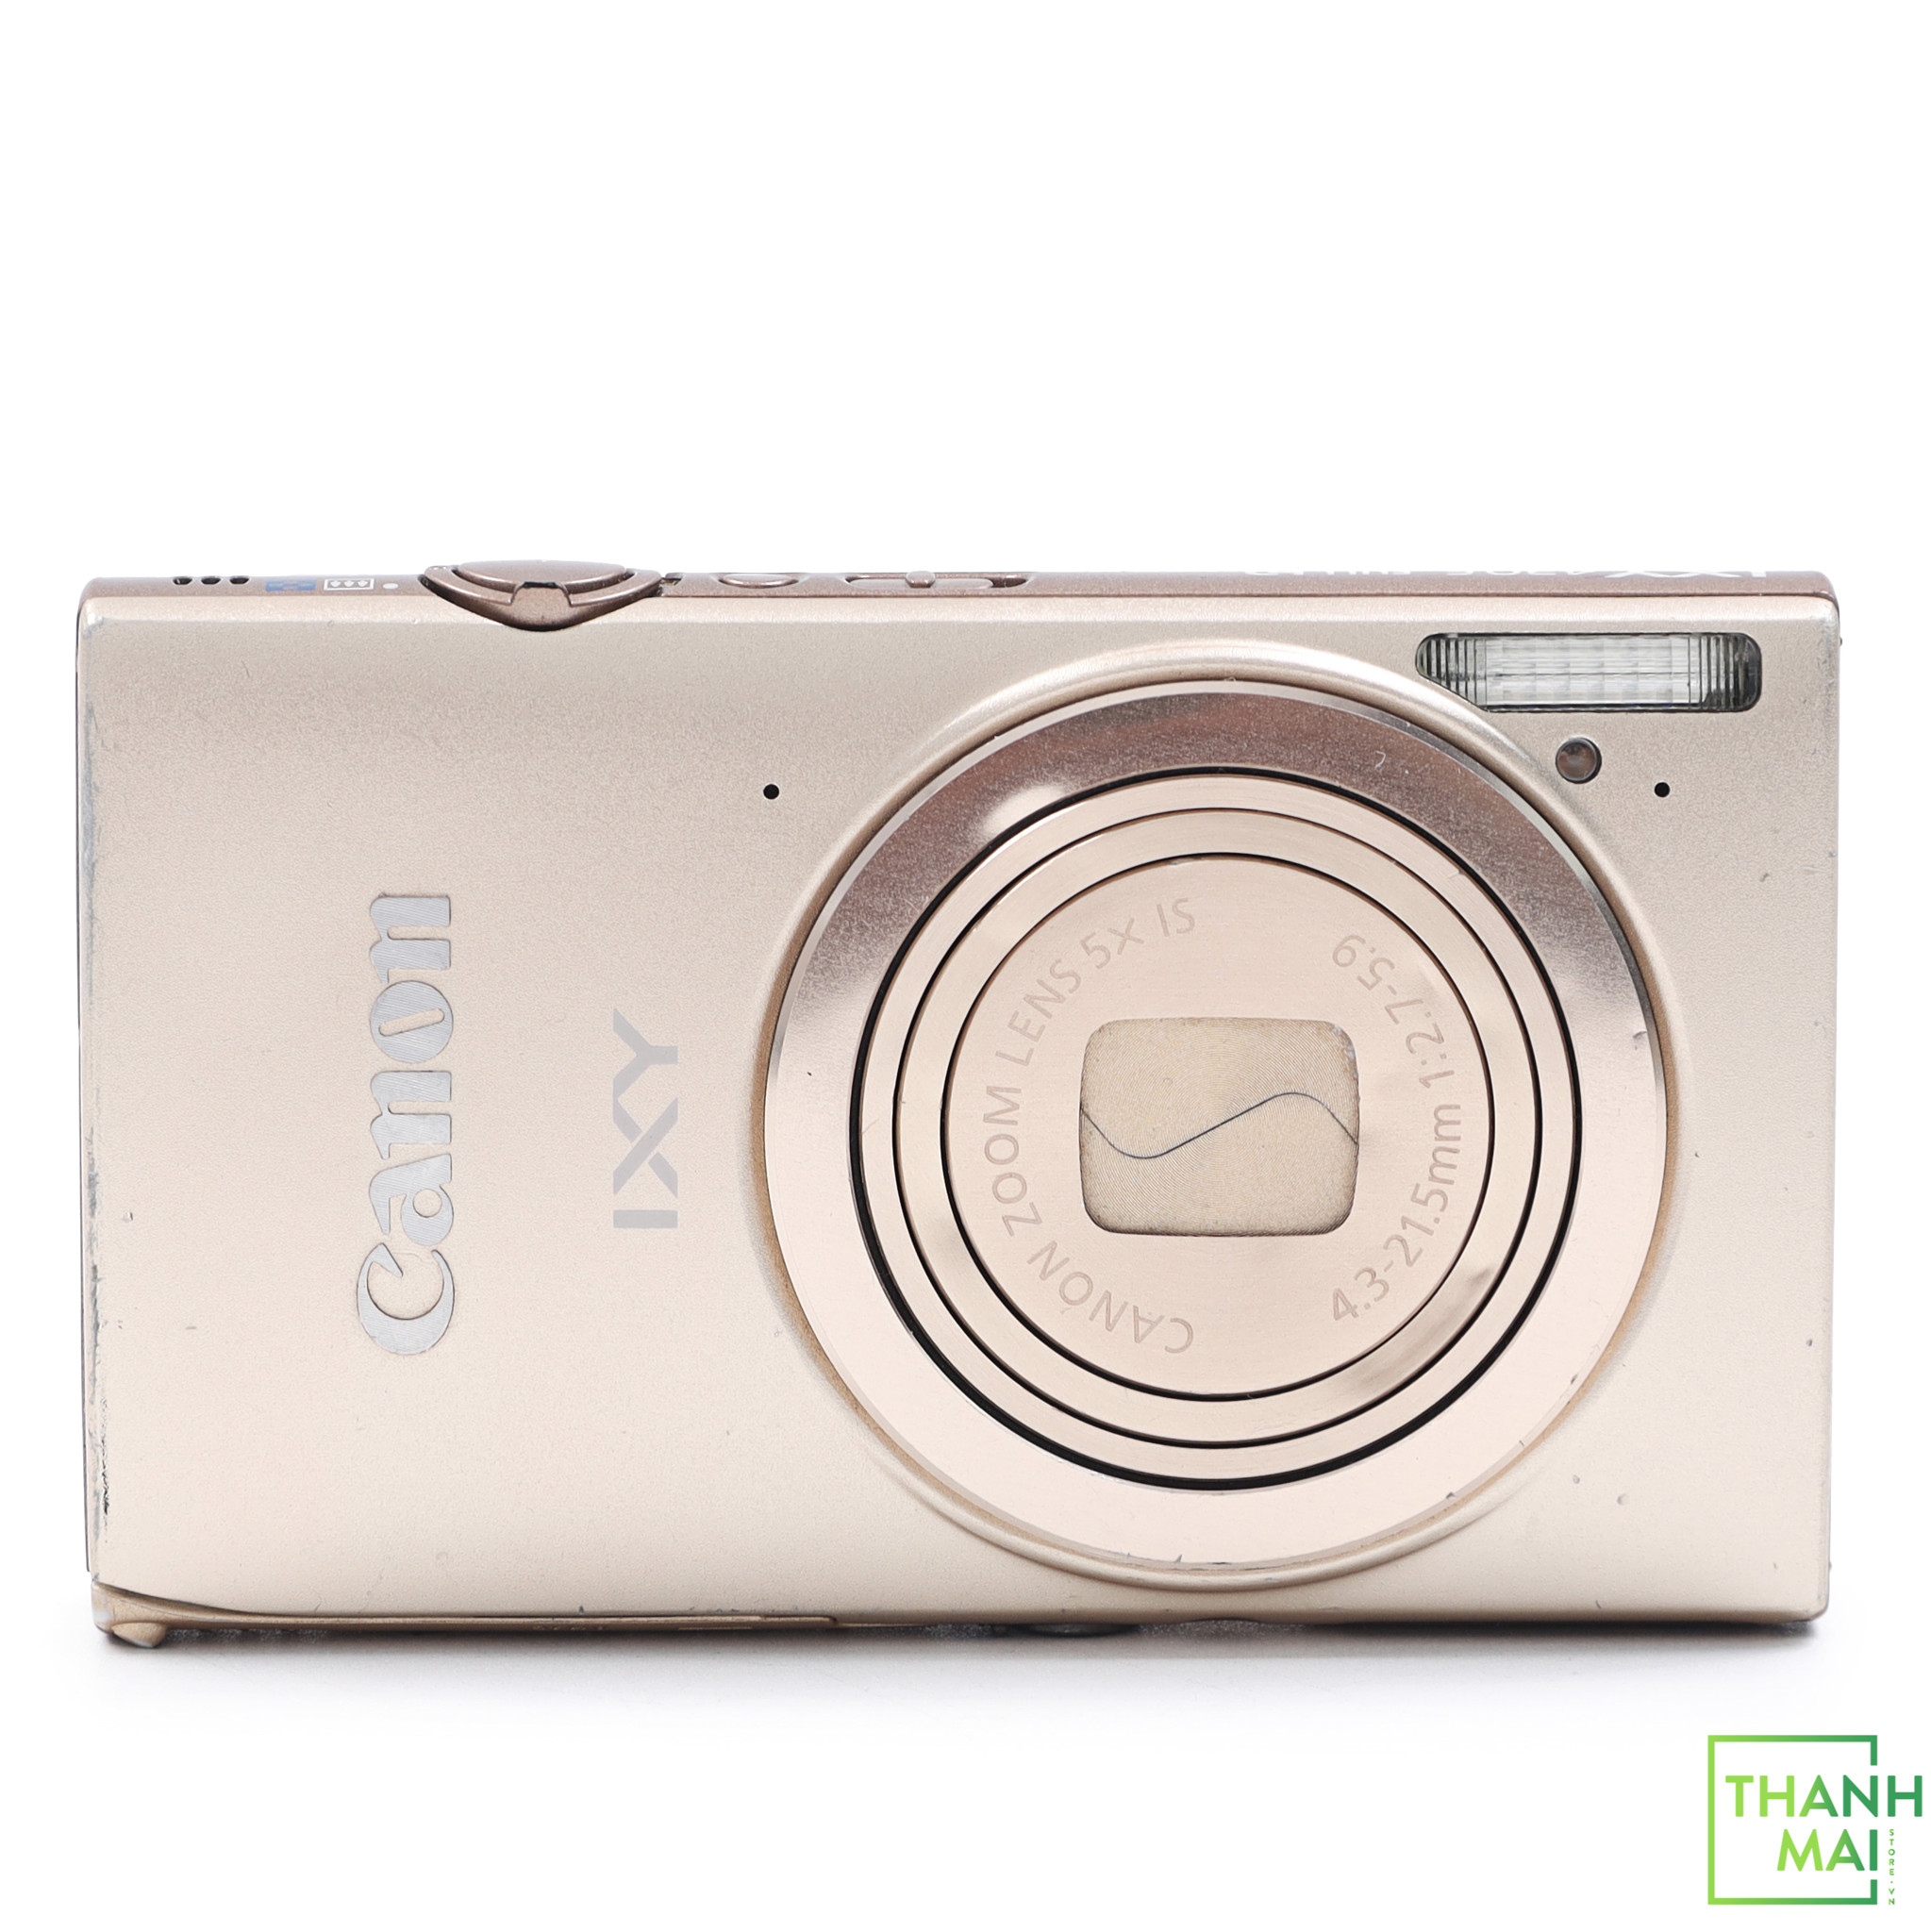 総合1位【美品】Canon ixy 430f デジタルカメラ